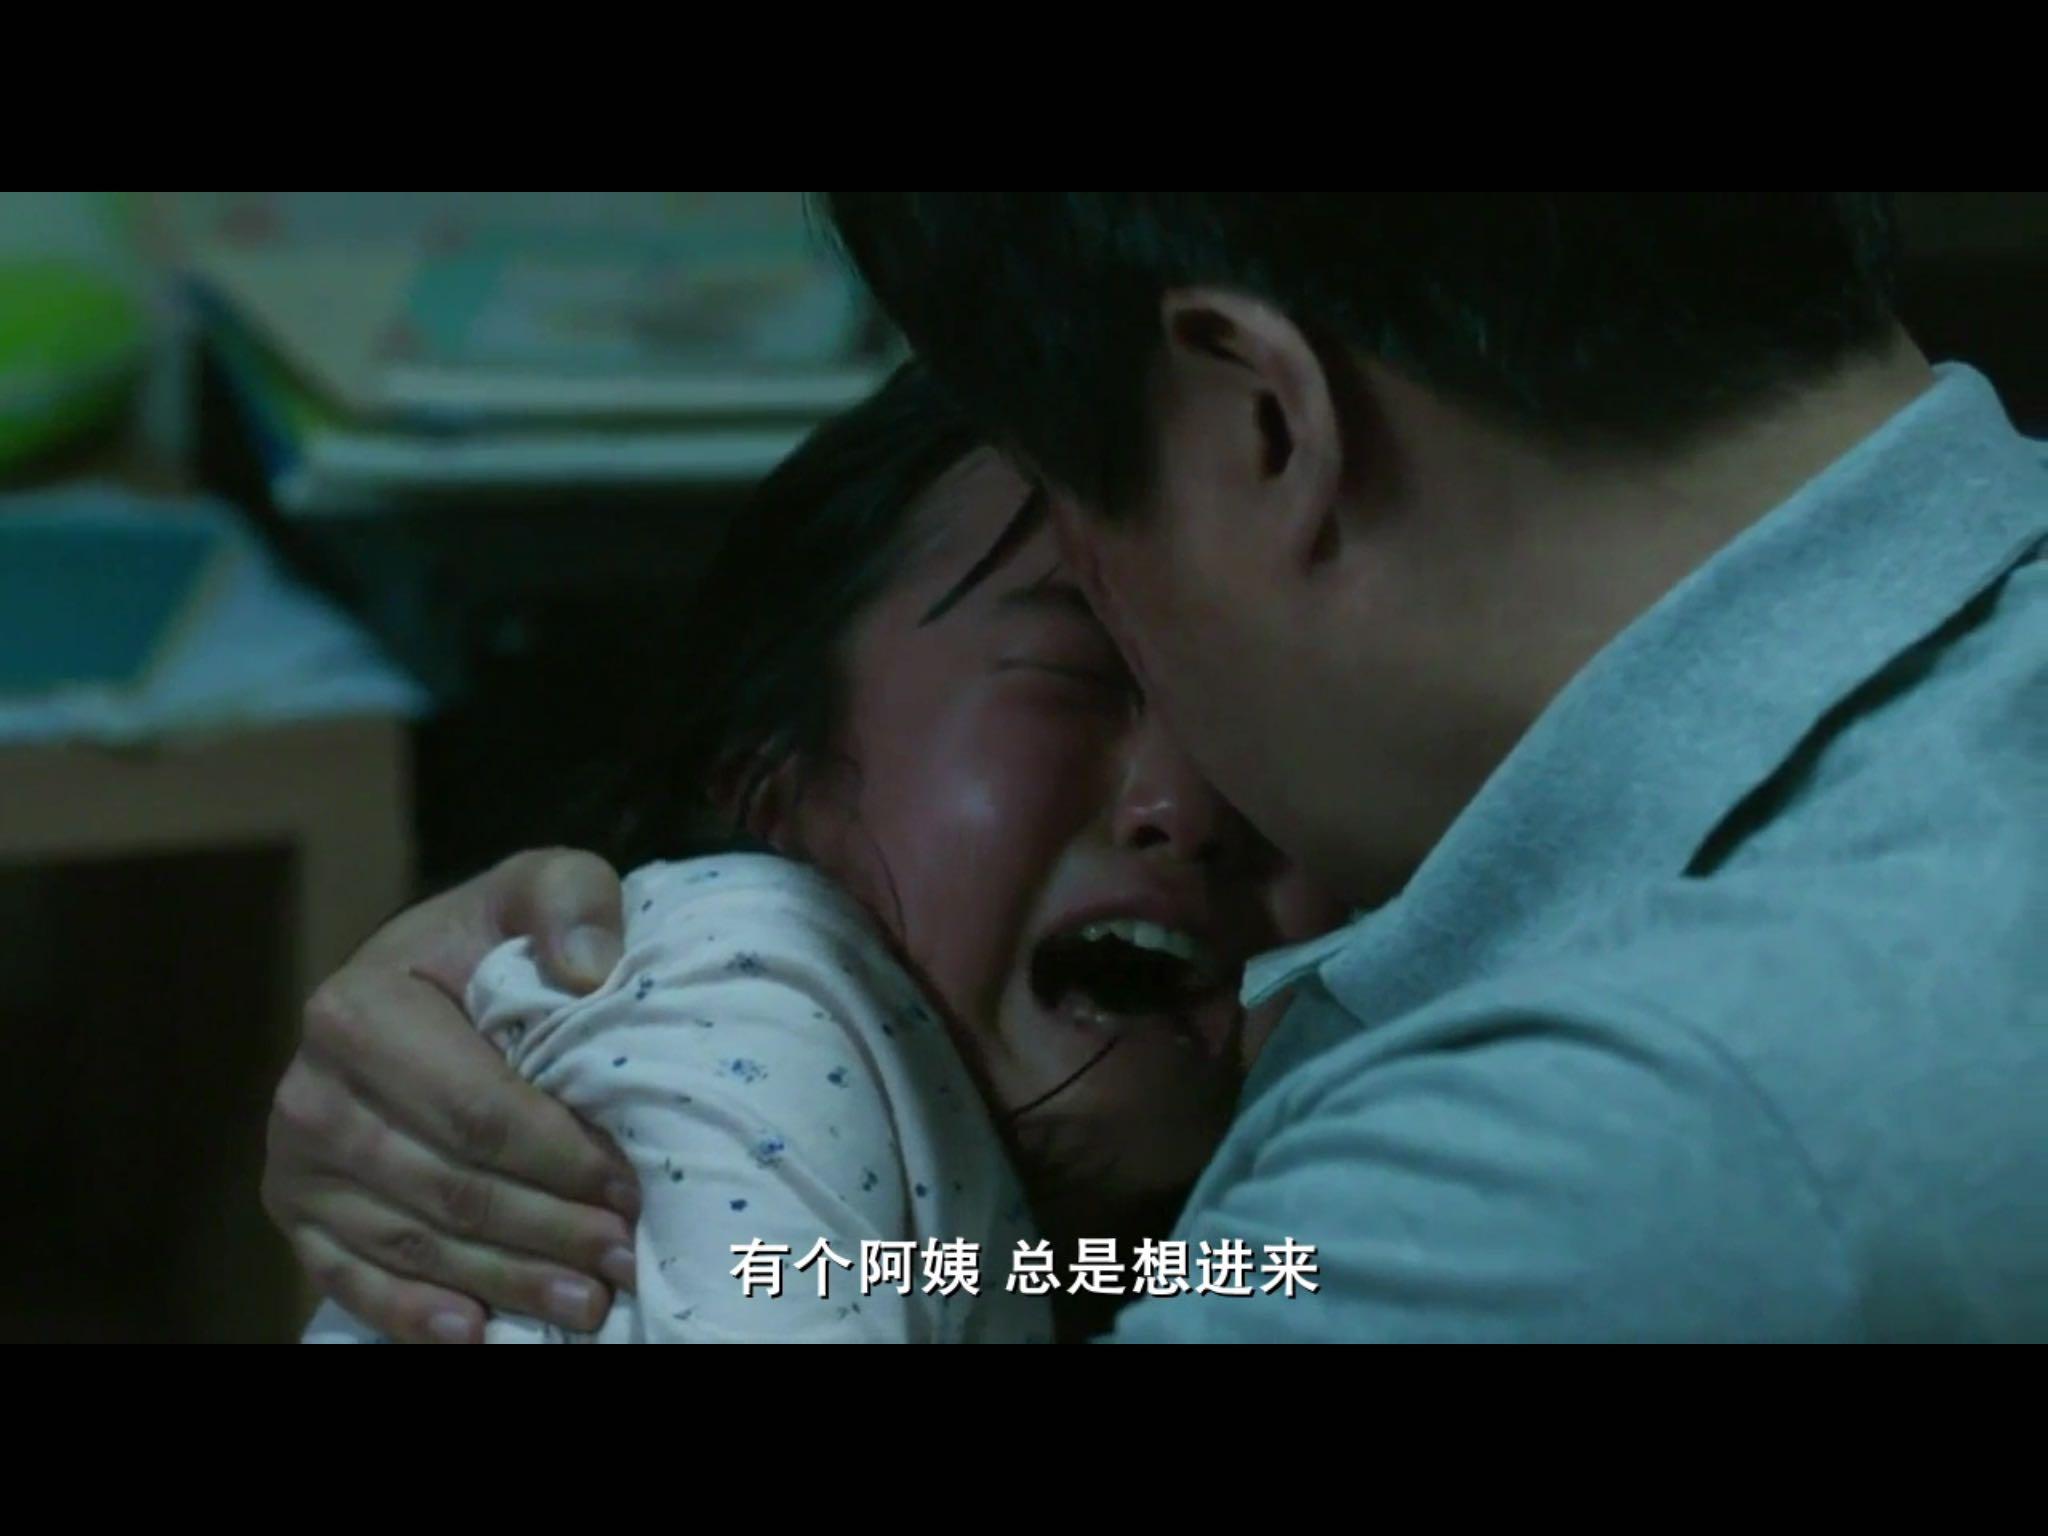 韩国电影《哭声》里这一幕出现的人,是谁?